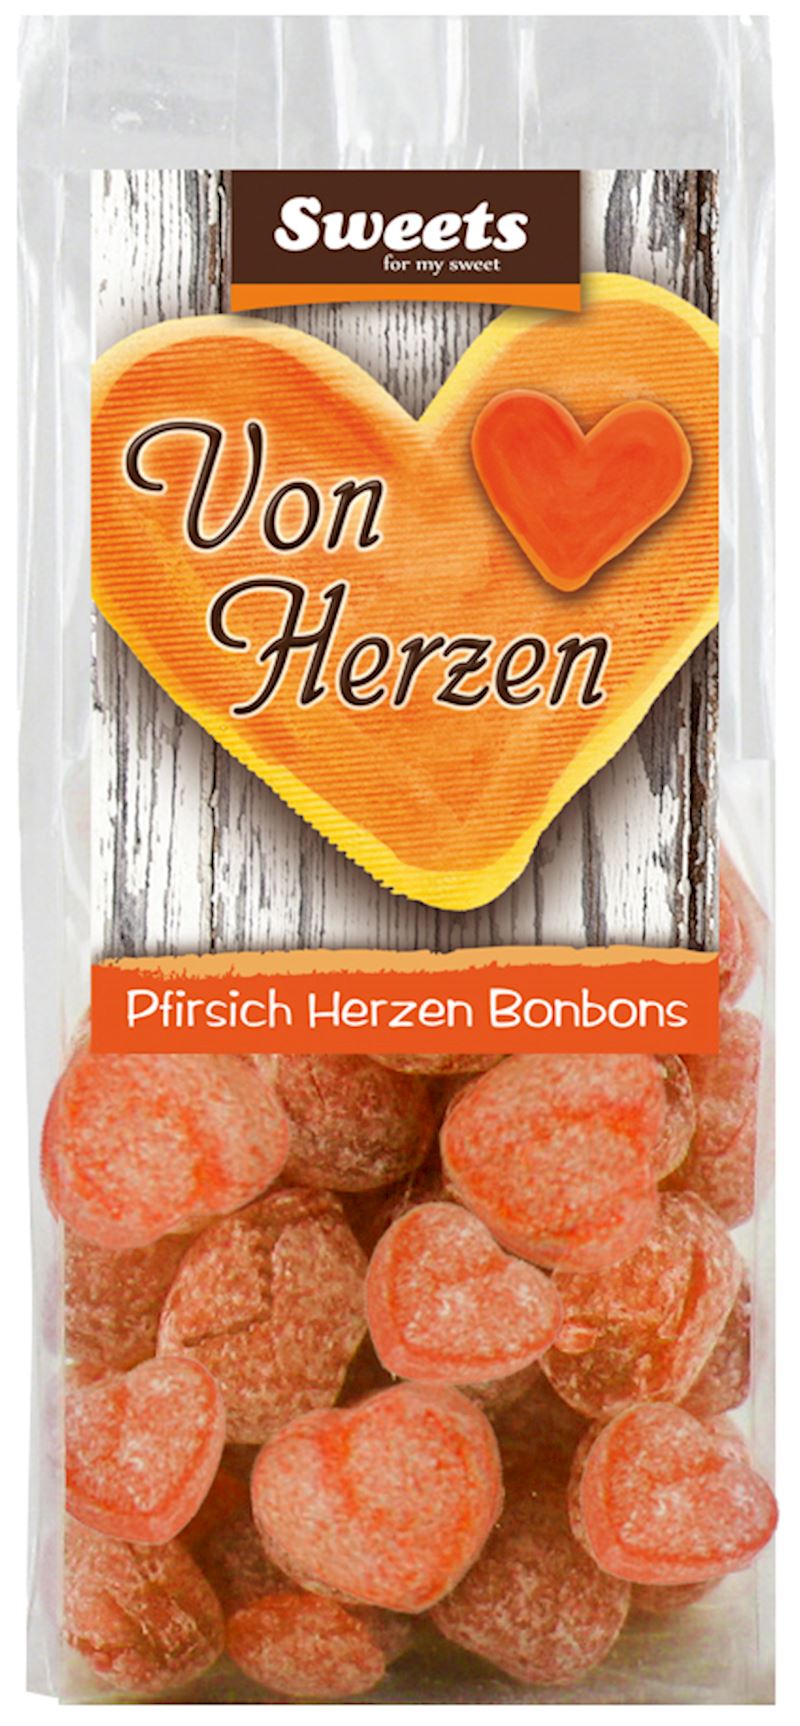 Bonbons Pfirsich Herzen 150 g im Beutel